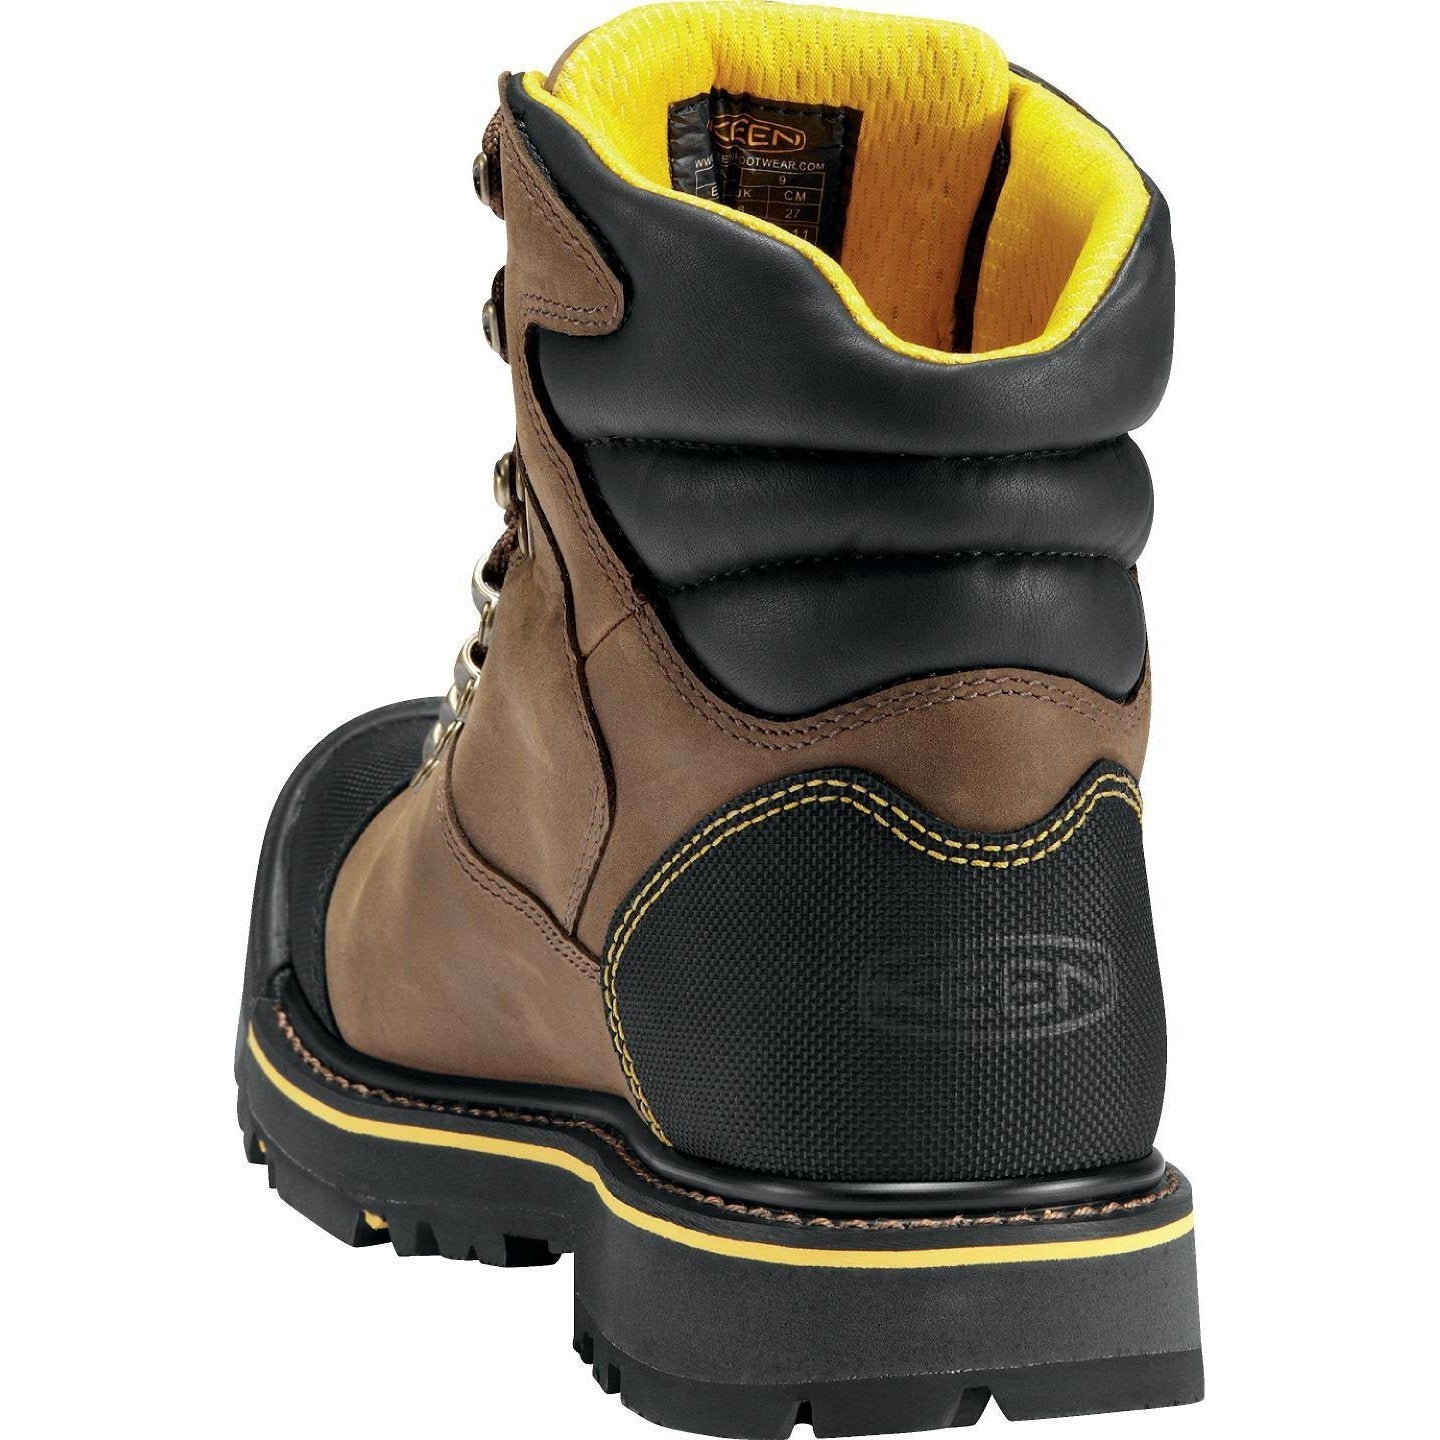 Keen Utility Men's Milwaukee Steel Toe WP Work Boots - Brown - 1009174  - Overlook Boots